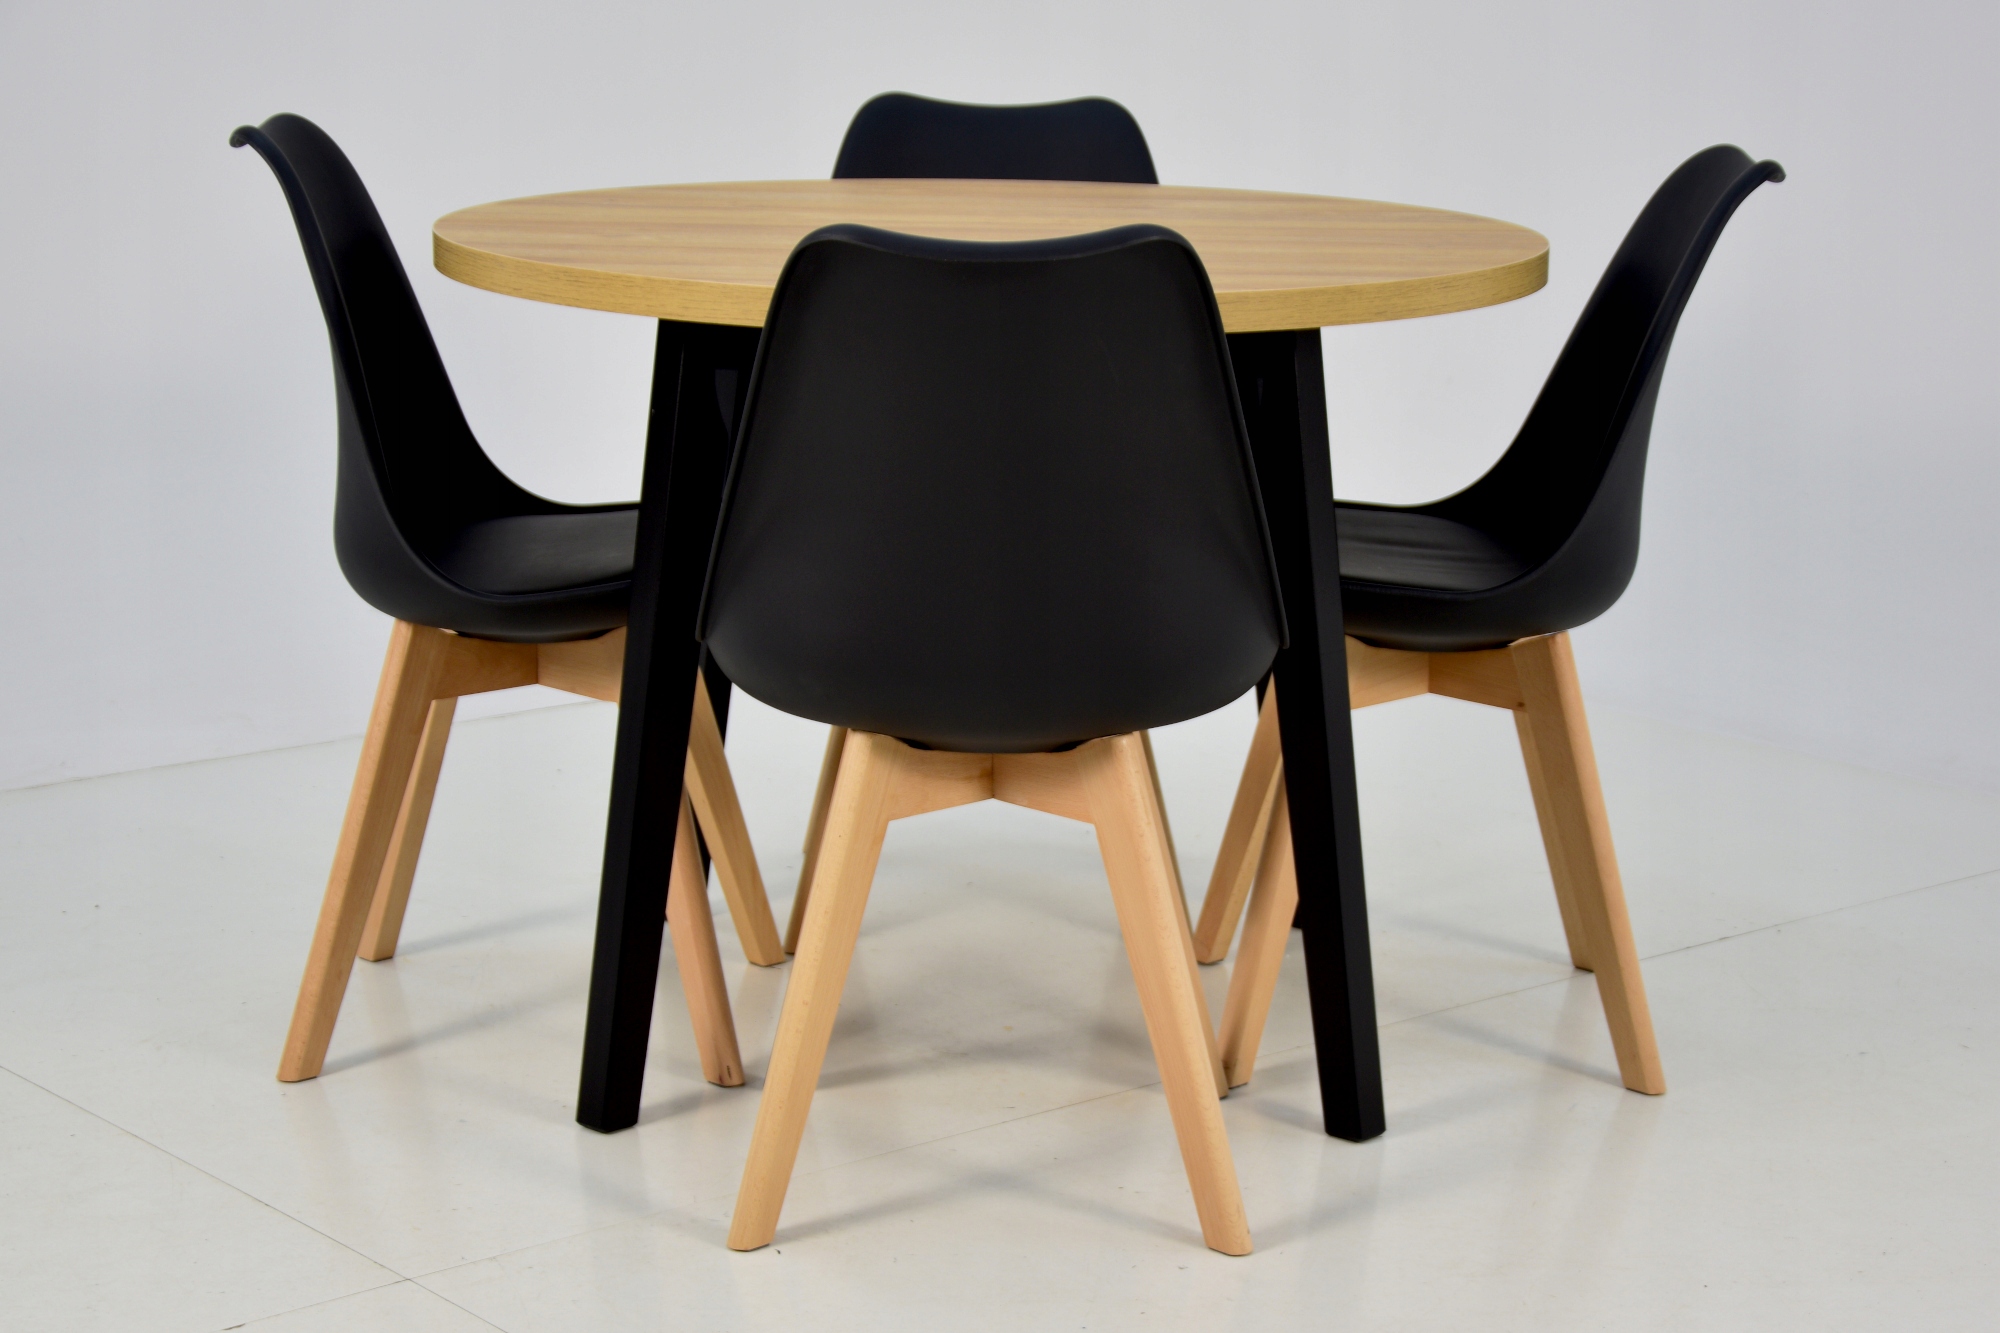 4 скандинавских стула + круглый стол 100 см. Материал дерево